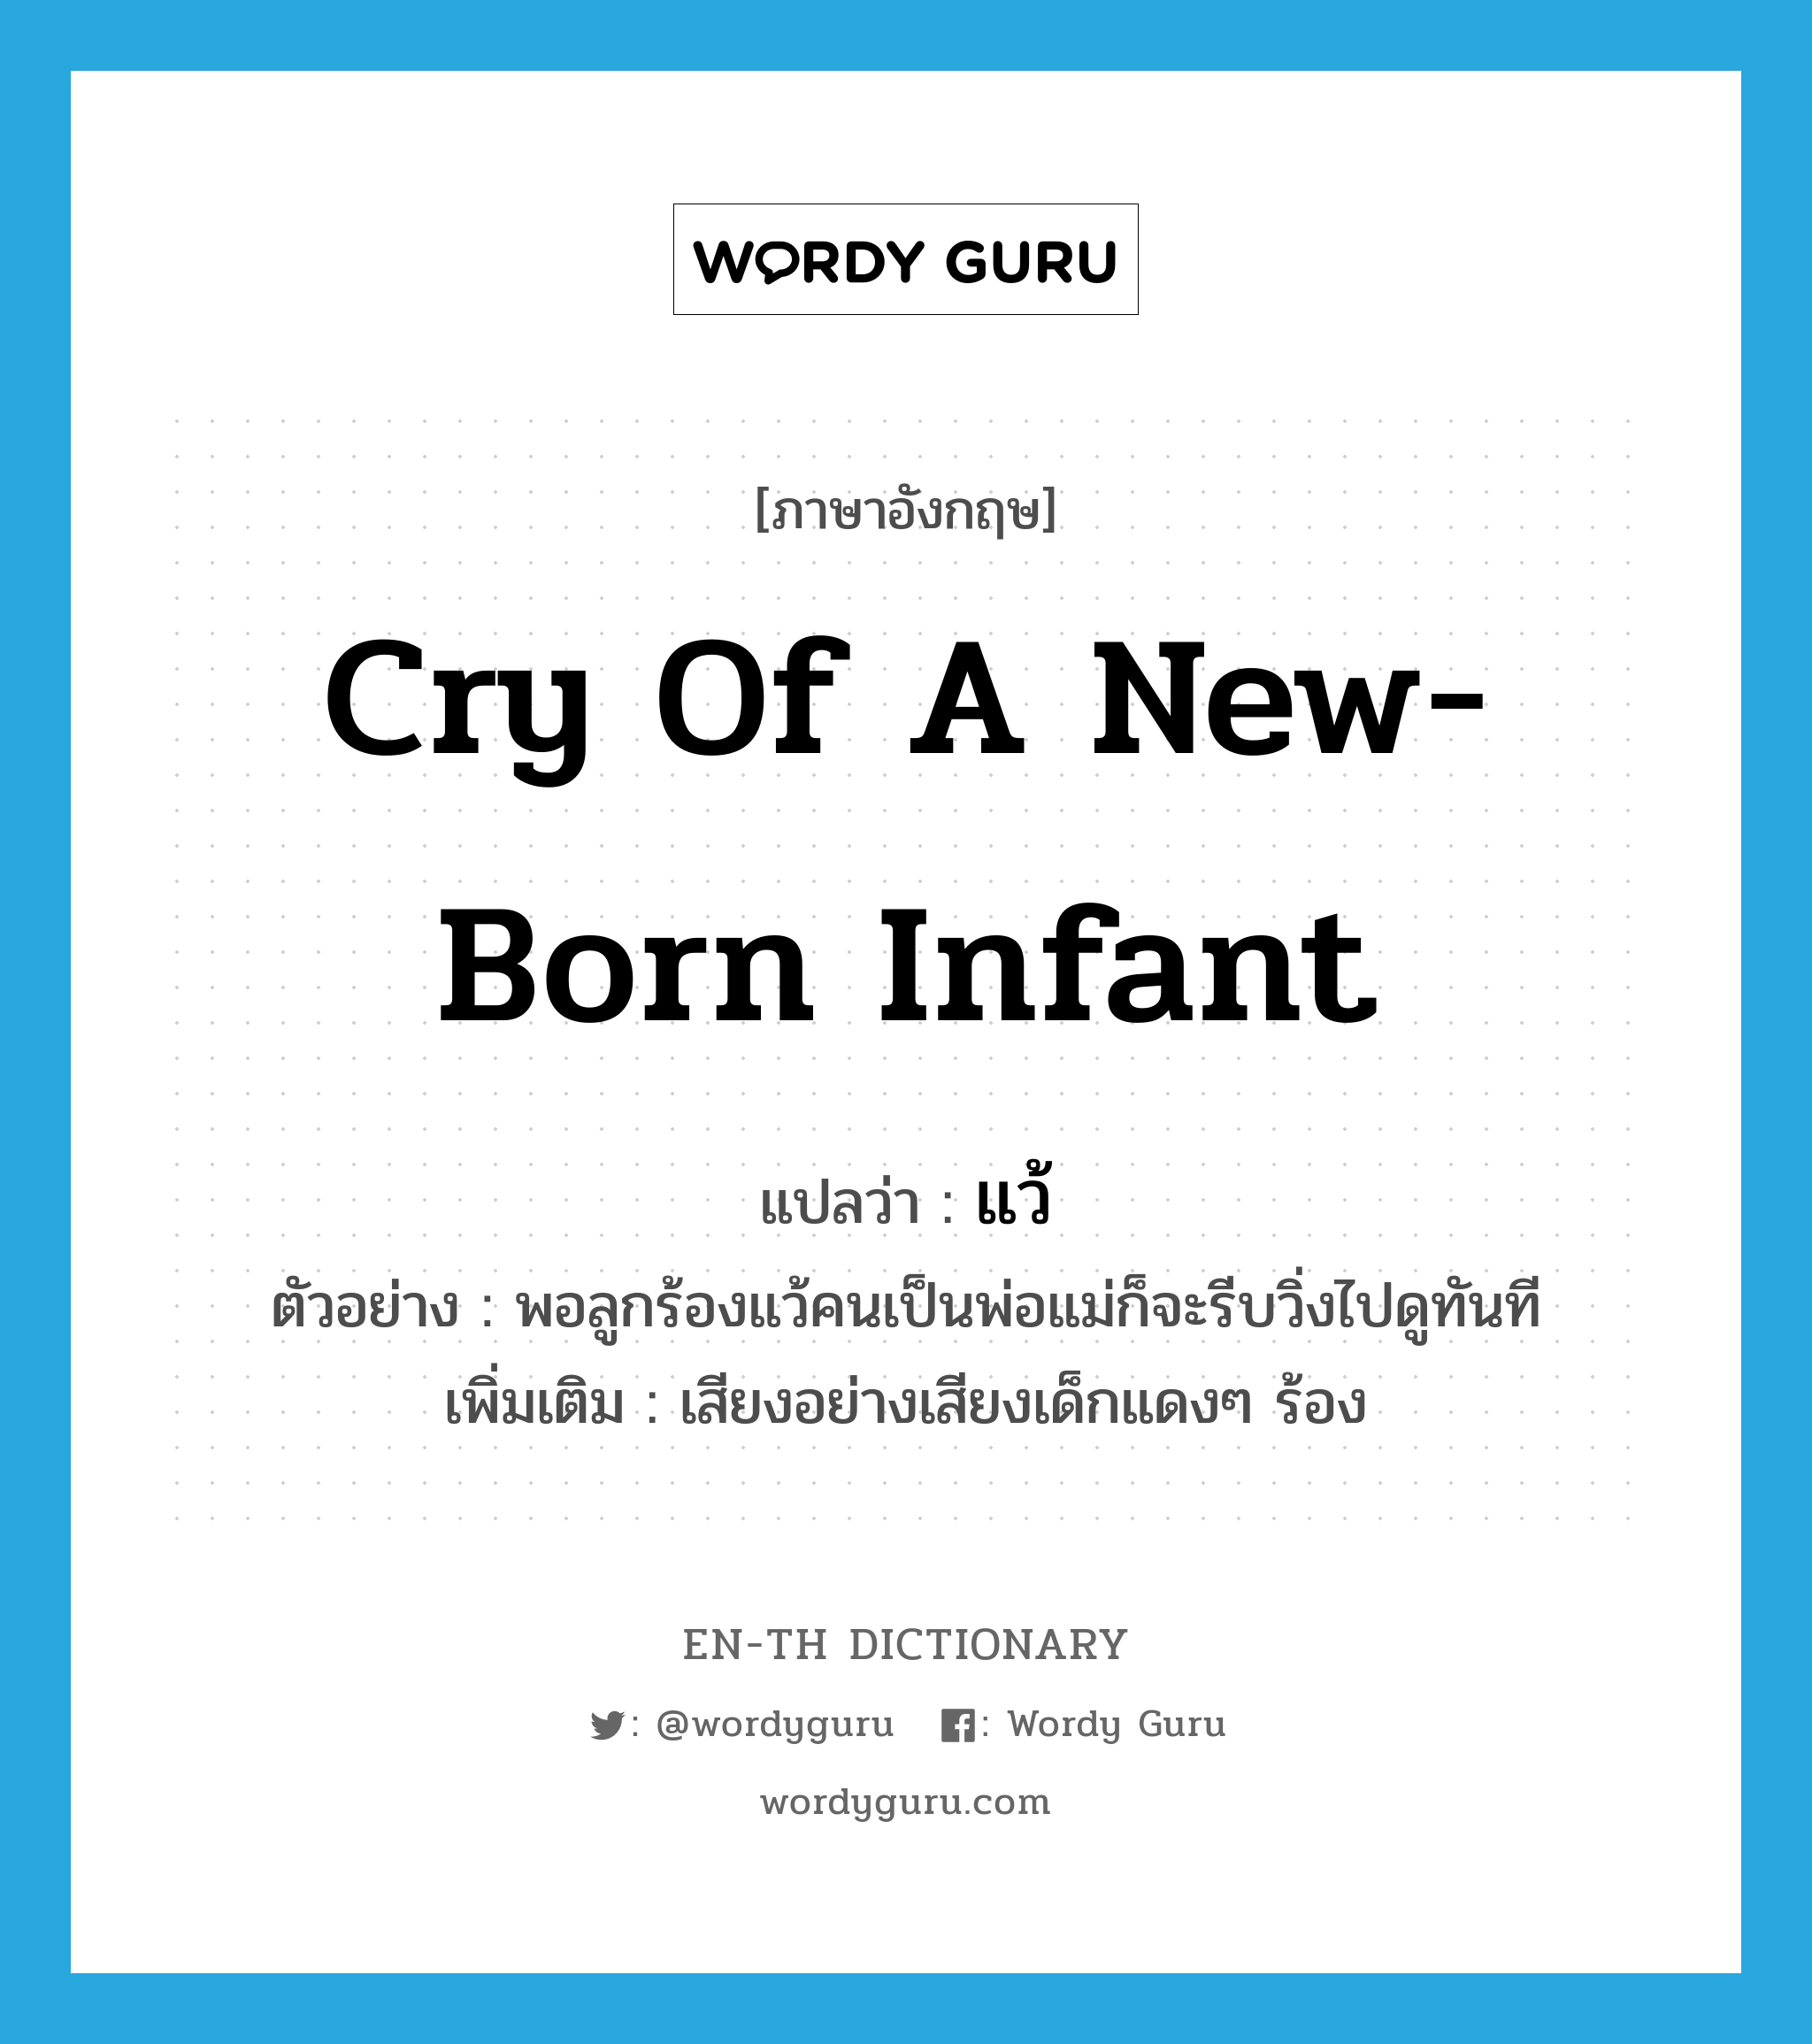 cry of a new-born infant แปลว่า?, คำศัพท์ภาษาอังกฤษ cry of a new-born infant แปลว่า แว้ ประเภท INT ตัวอย่าง พอลูกร้องแว้คนเป็นพ่อแม่ก็จะรีบวิ่งไปดูทันที เพิ่มเติม เสียงอย่างเสียงเด็กแดงๆ ร้อง หมวด INT